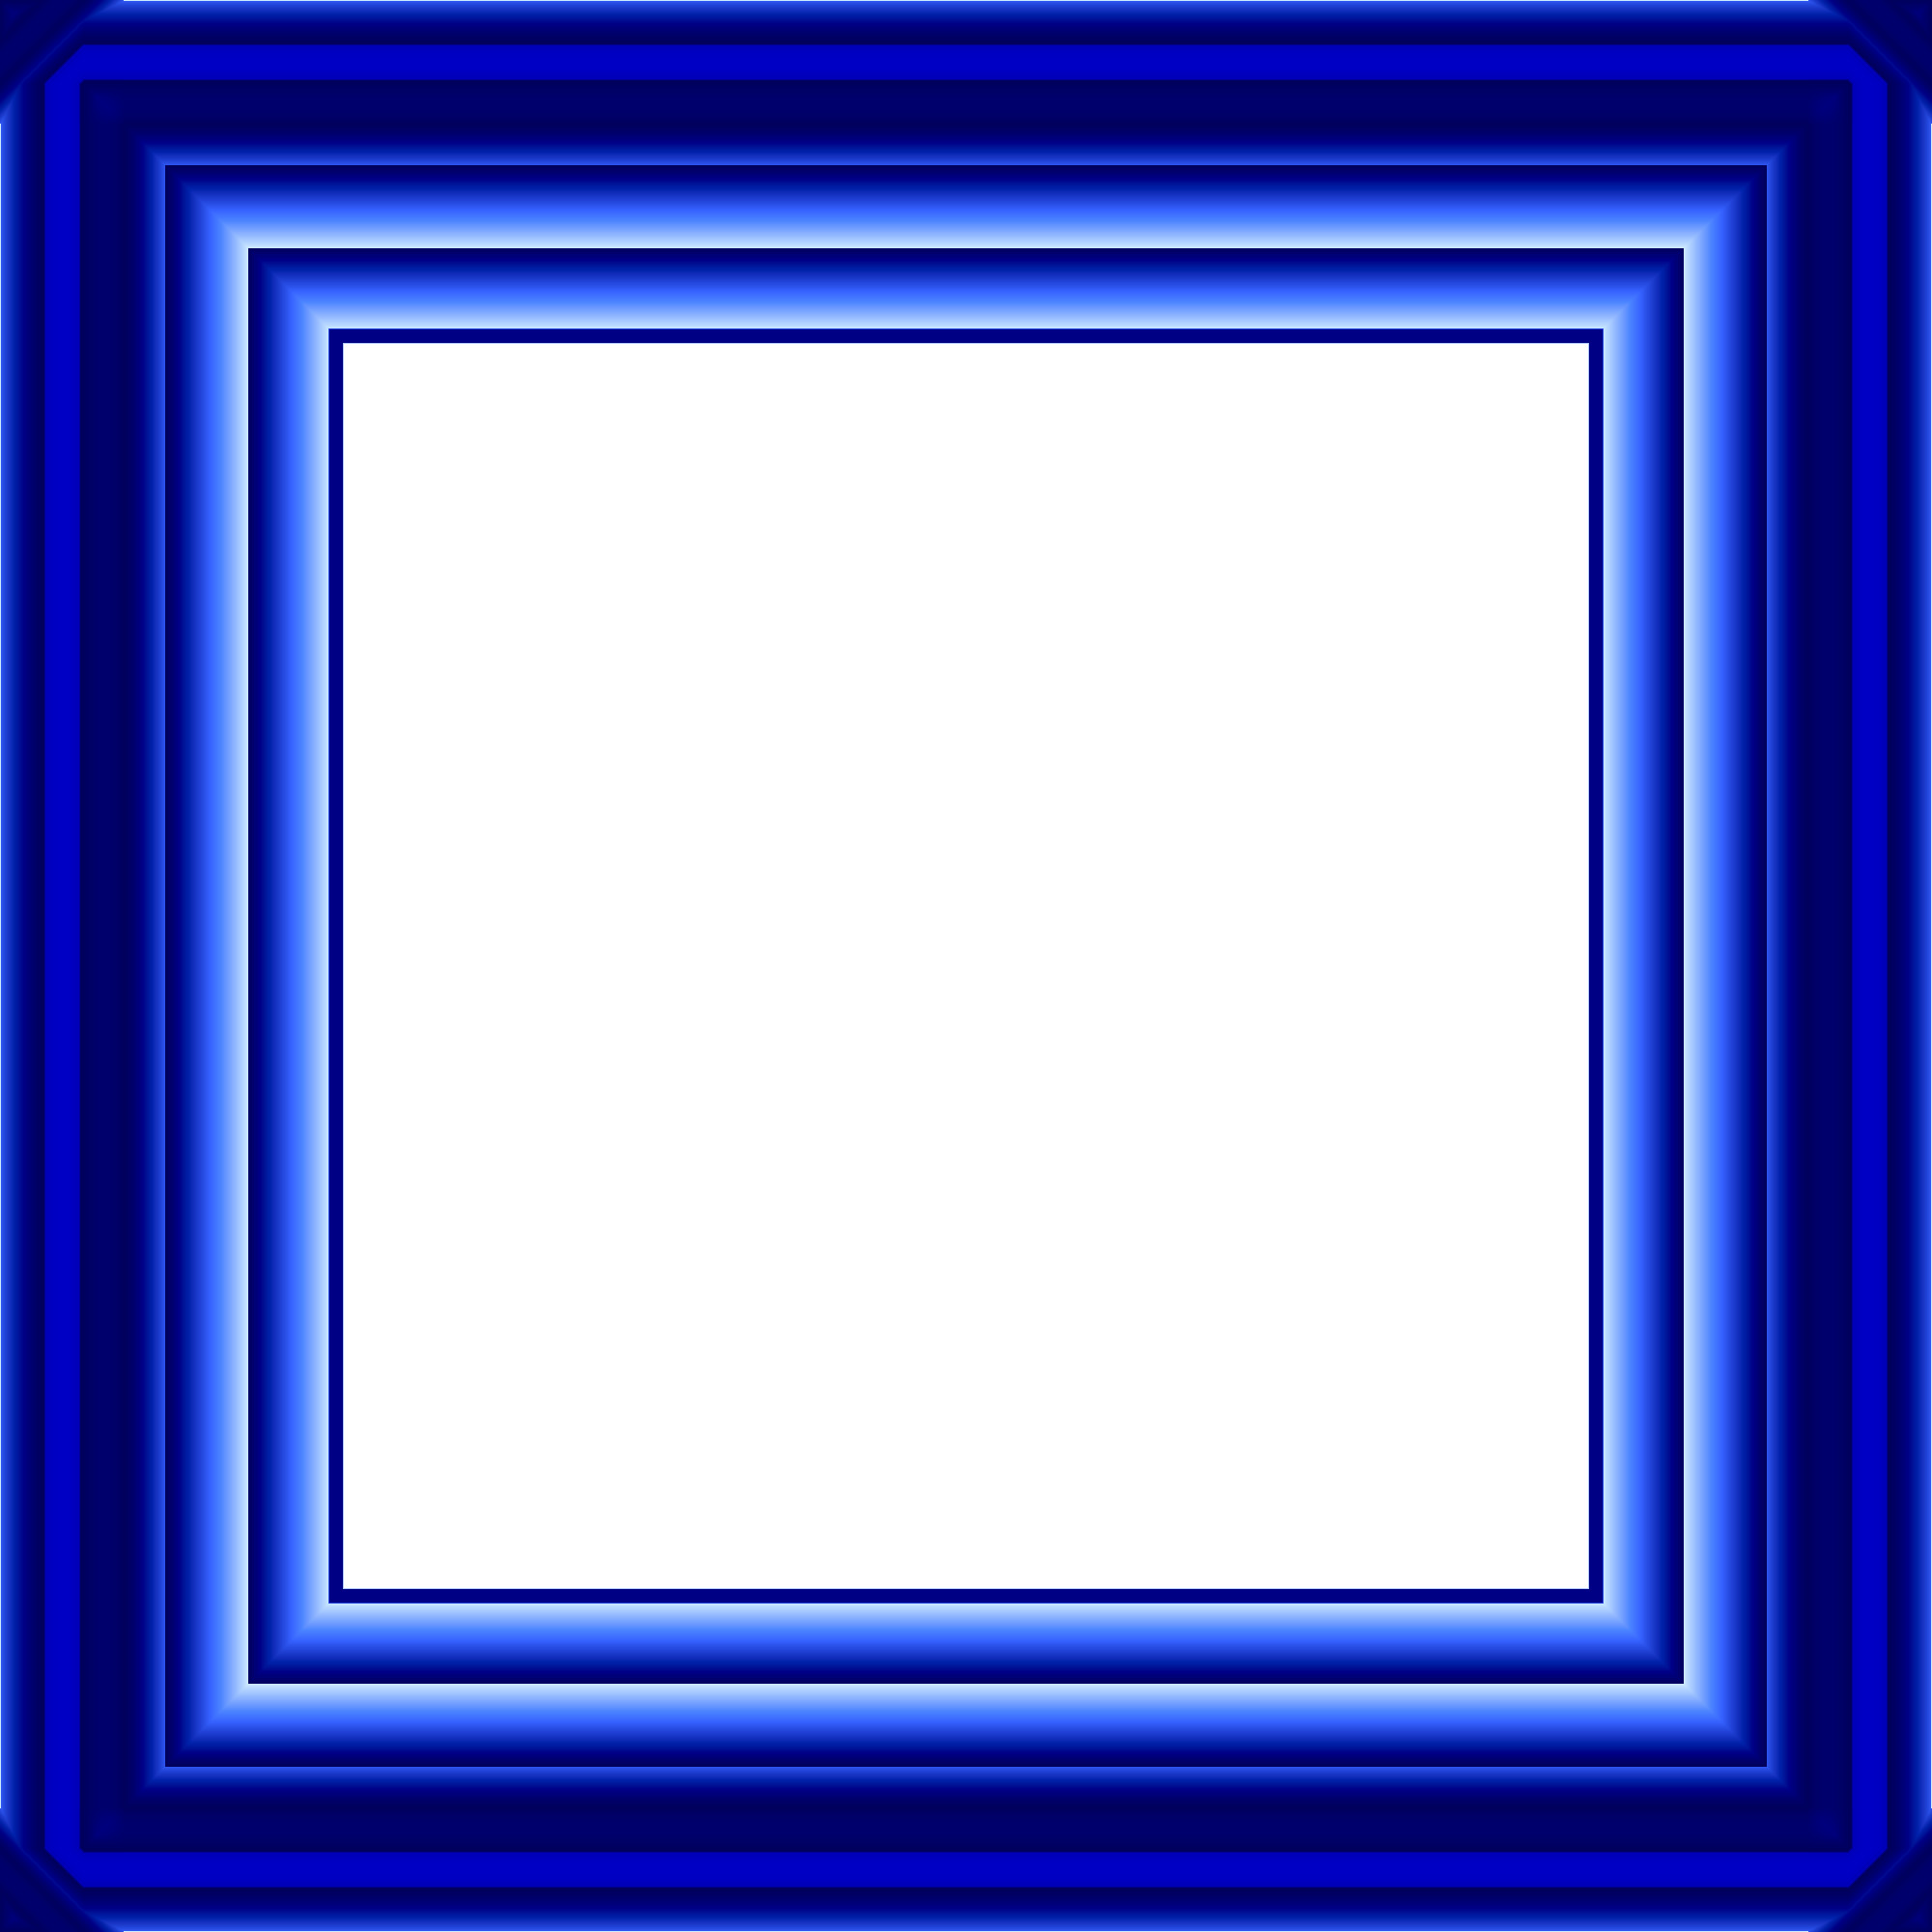 blue-frame-by-k612-on-deviantart